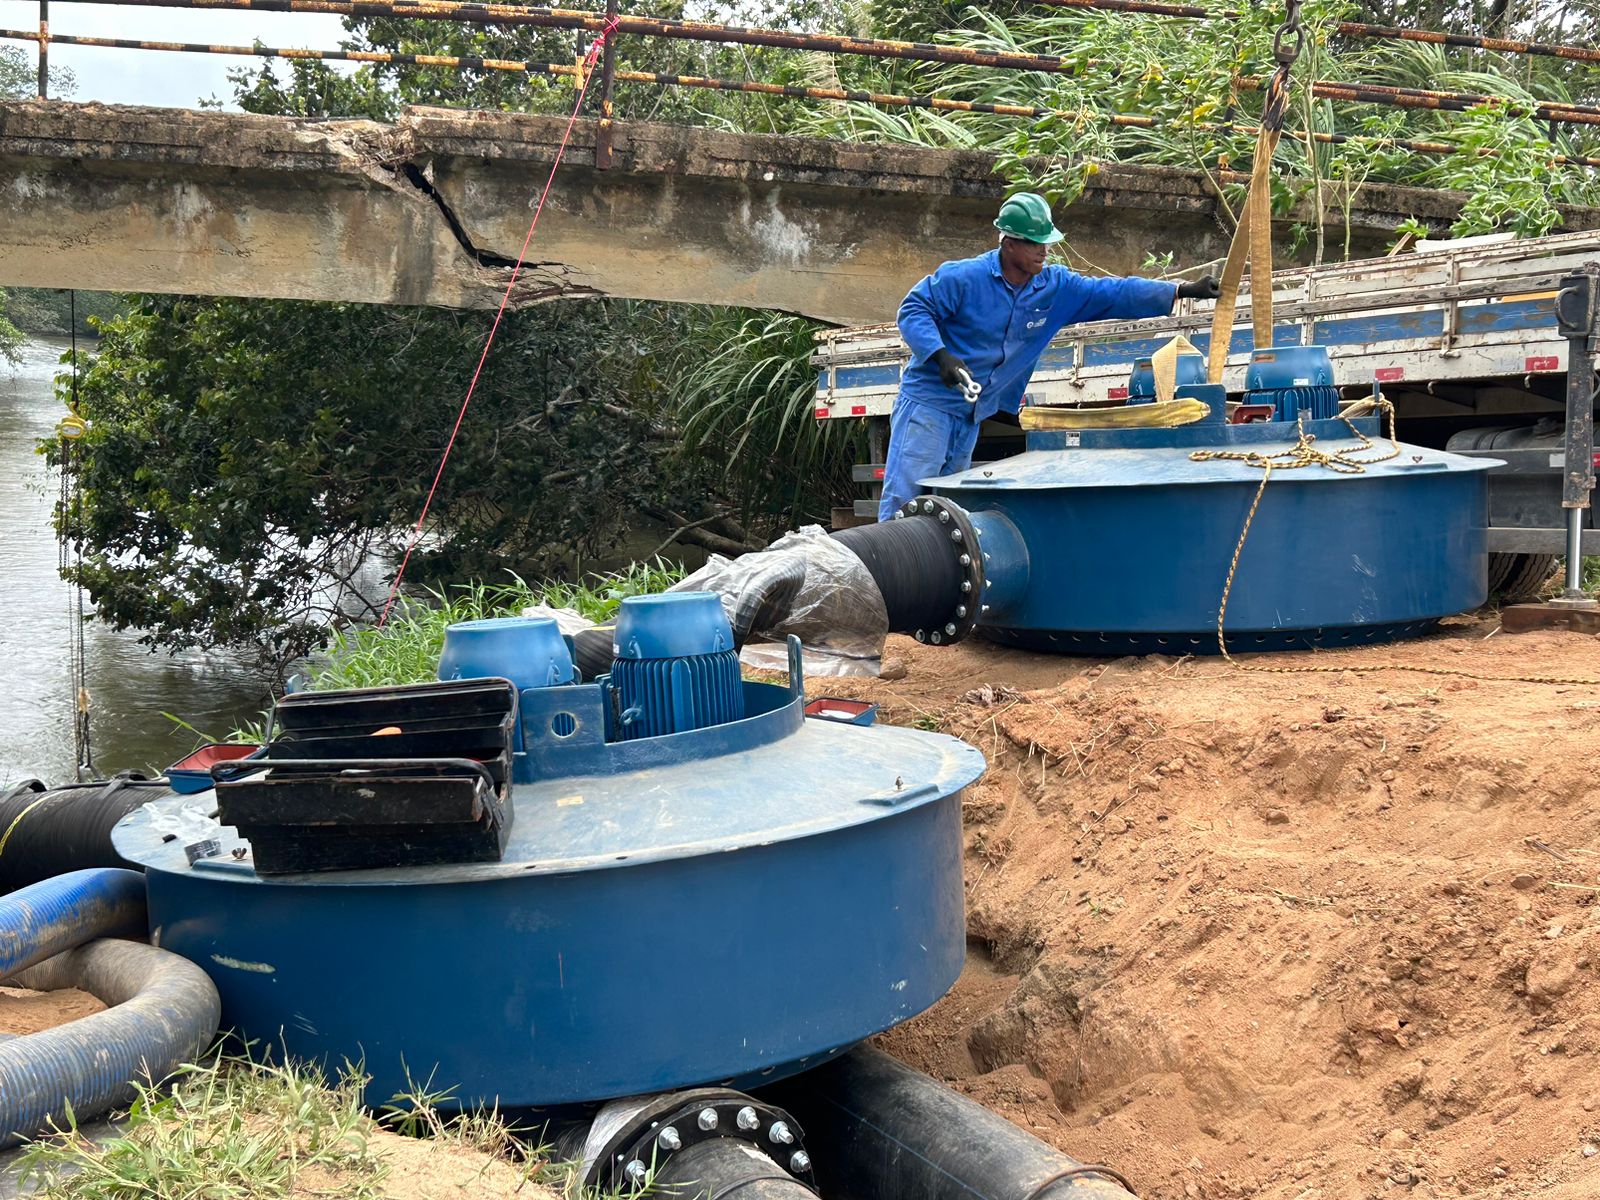 Rio+Saneamento instala bombas flutuantes em unidade operacional para captar mais água para período de estiagem, em Rio das Ostras